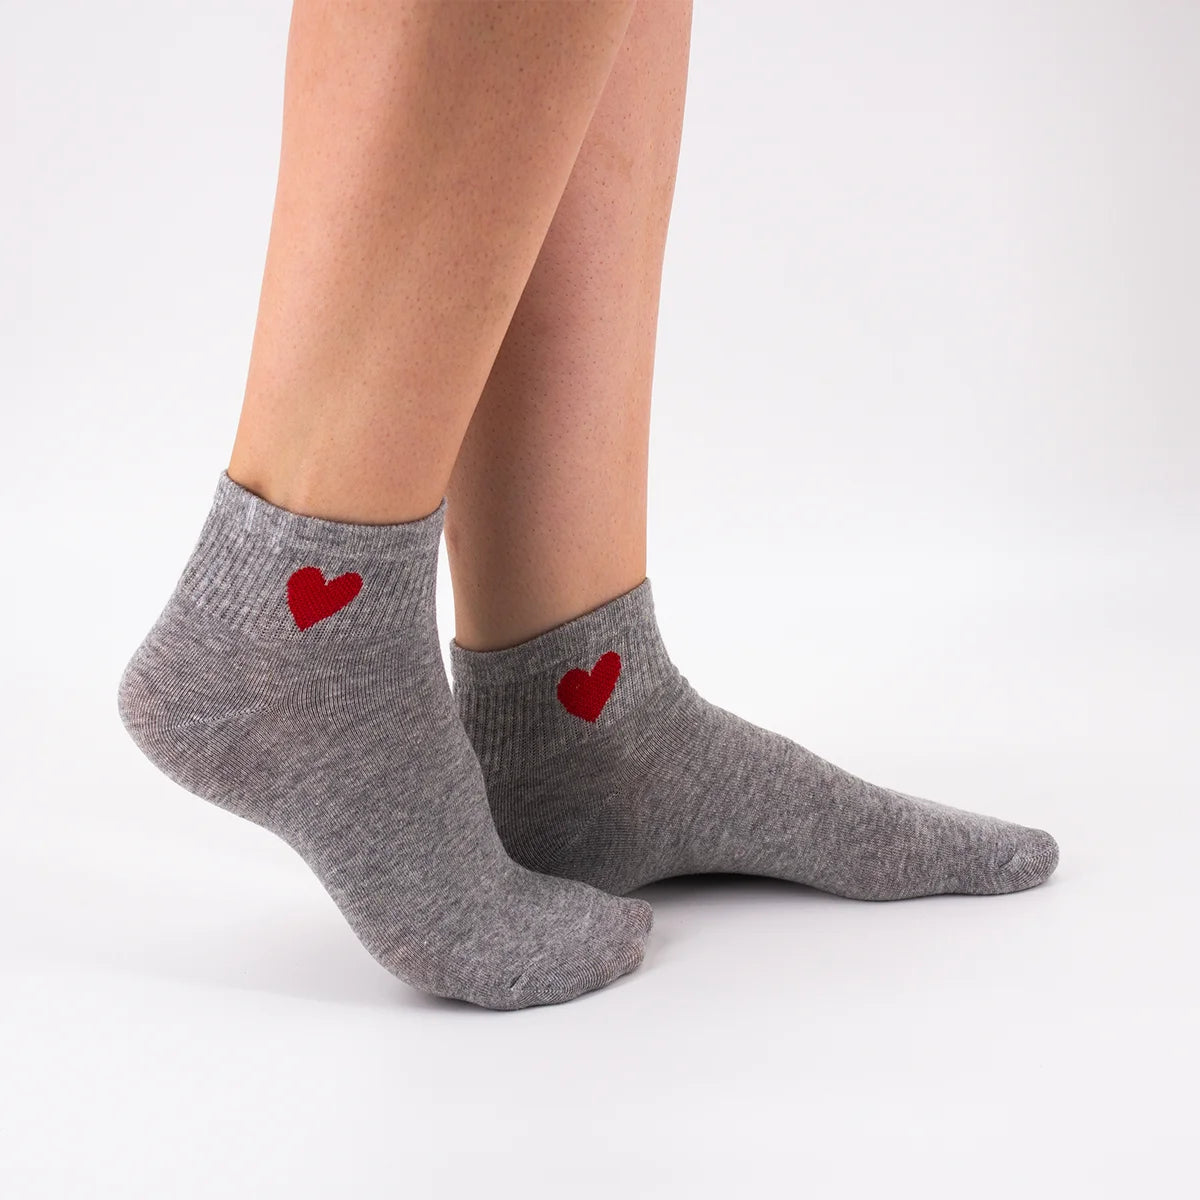 Chaussettes courtes grises adultes en coton avec un cœur sur le côté | Chaussettes abordables et de haute qualité | Un excellent choix pour les adultes qui aiment les cœurs |